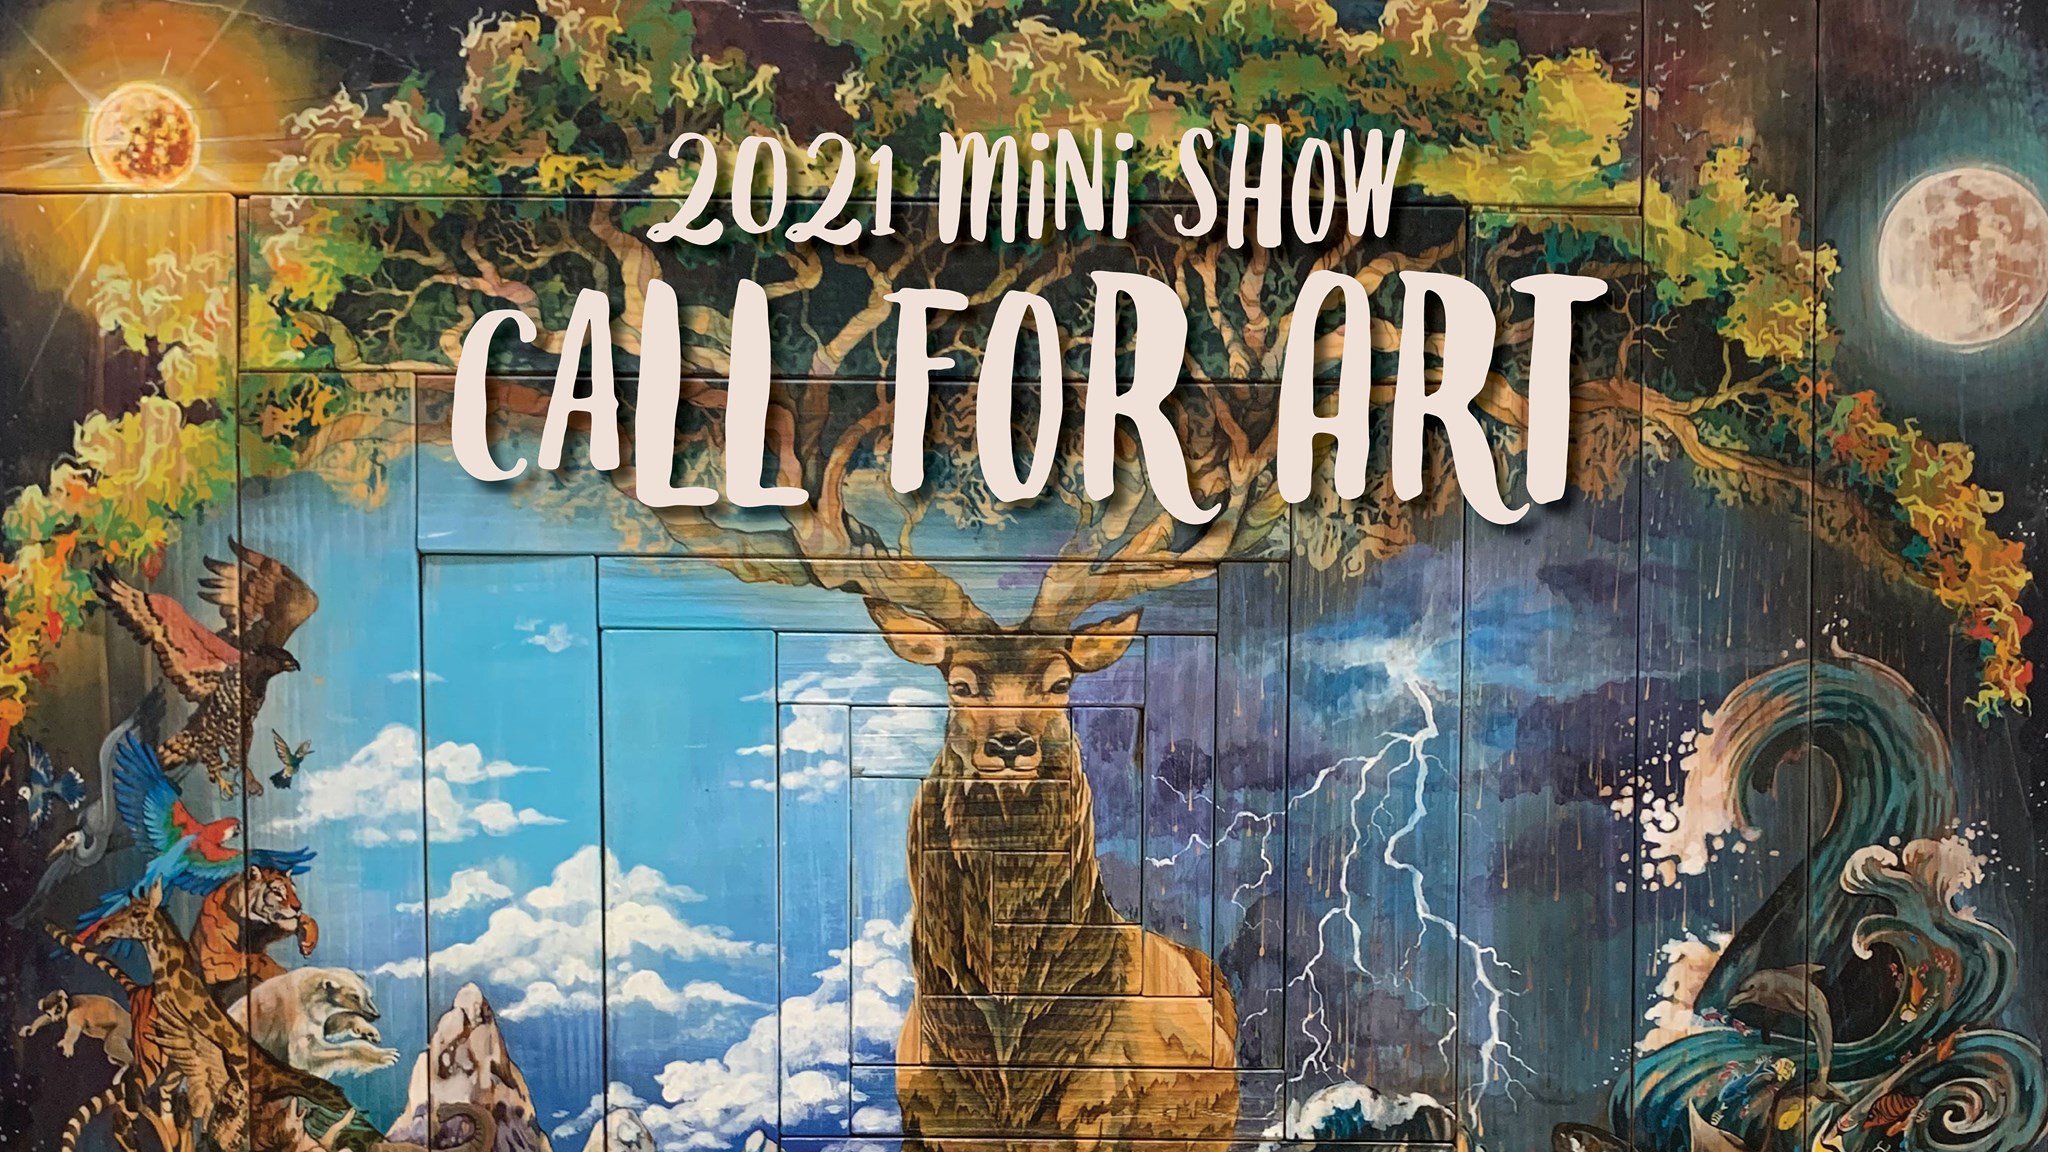 2021 Mini Show Call for Art